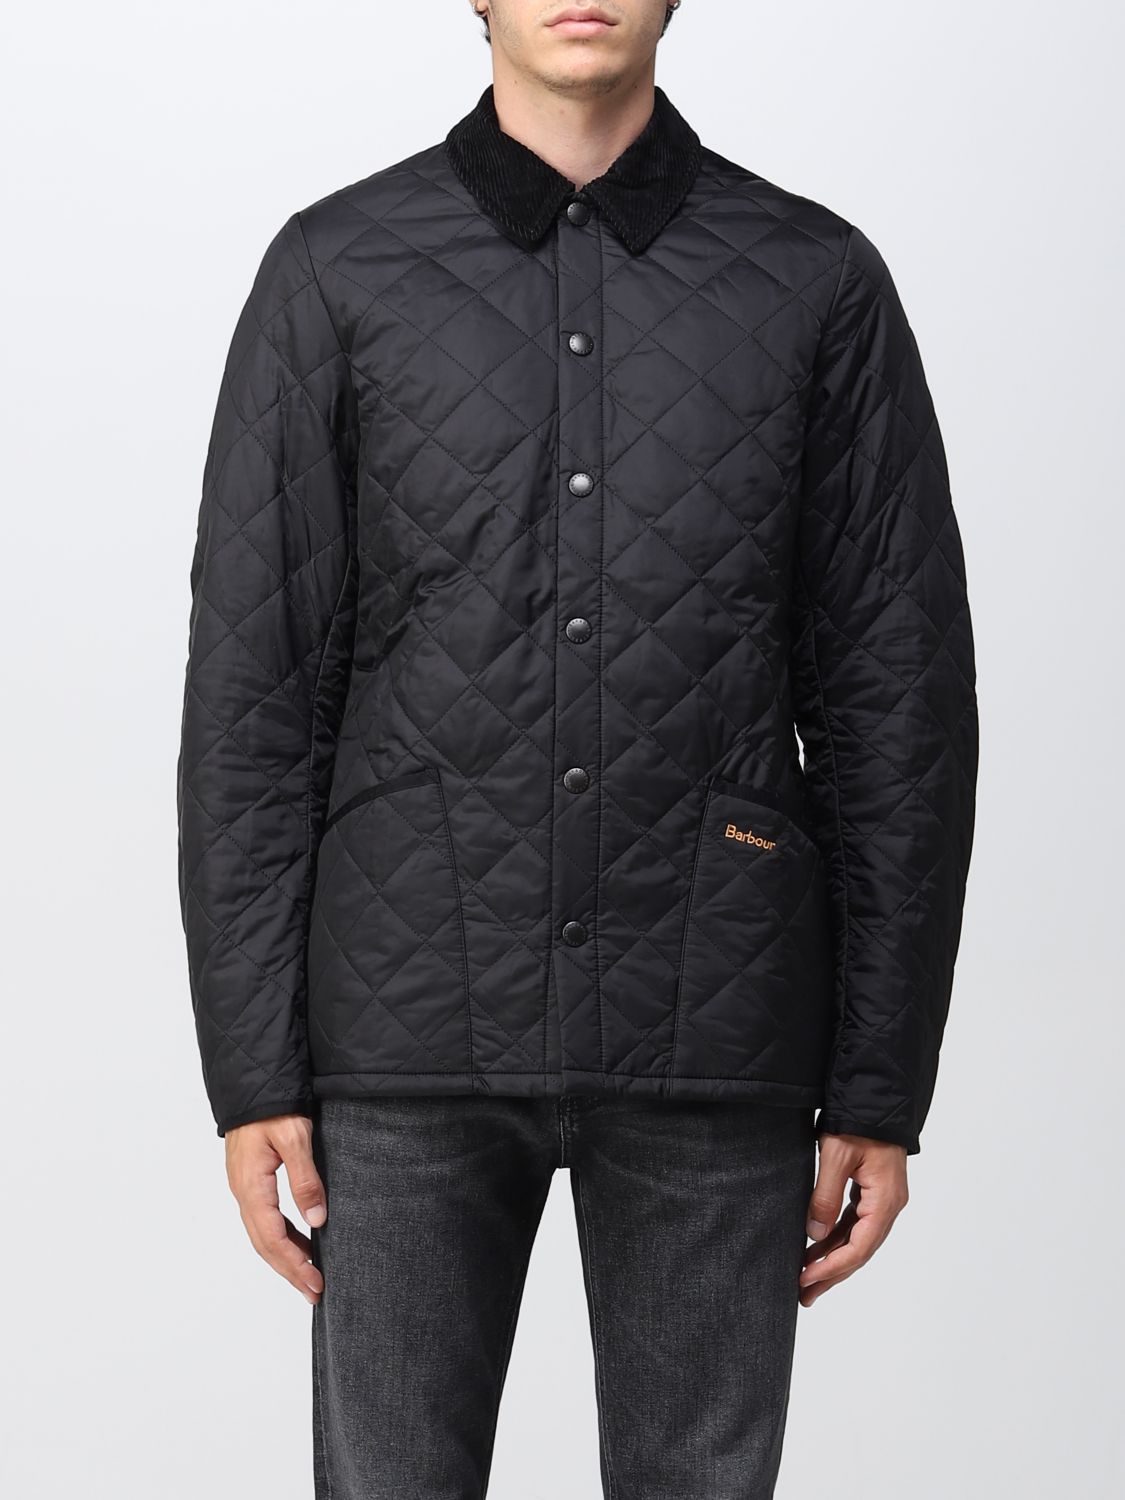 BARBOUR: jacket for man - Black | Barbour jacket MQU0240 online on ...